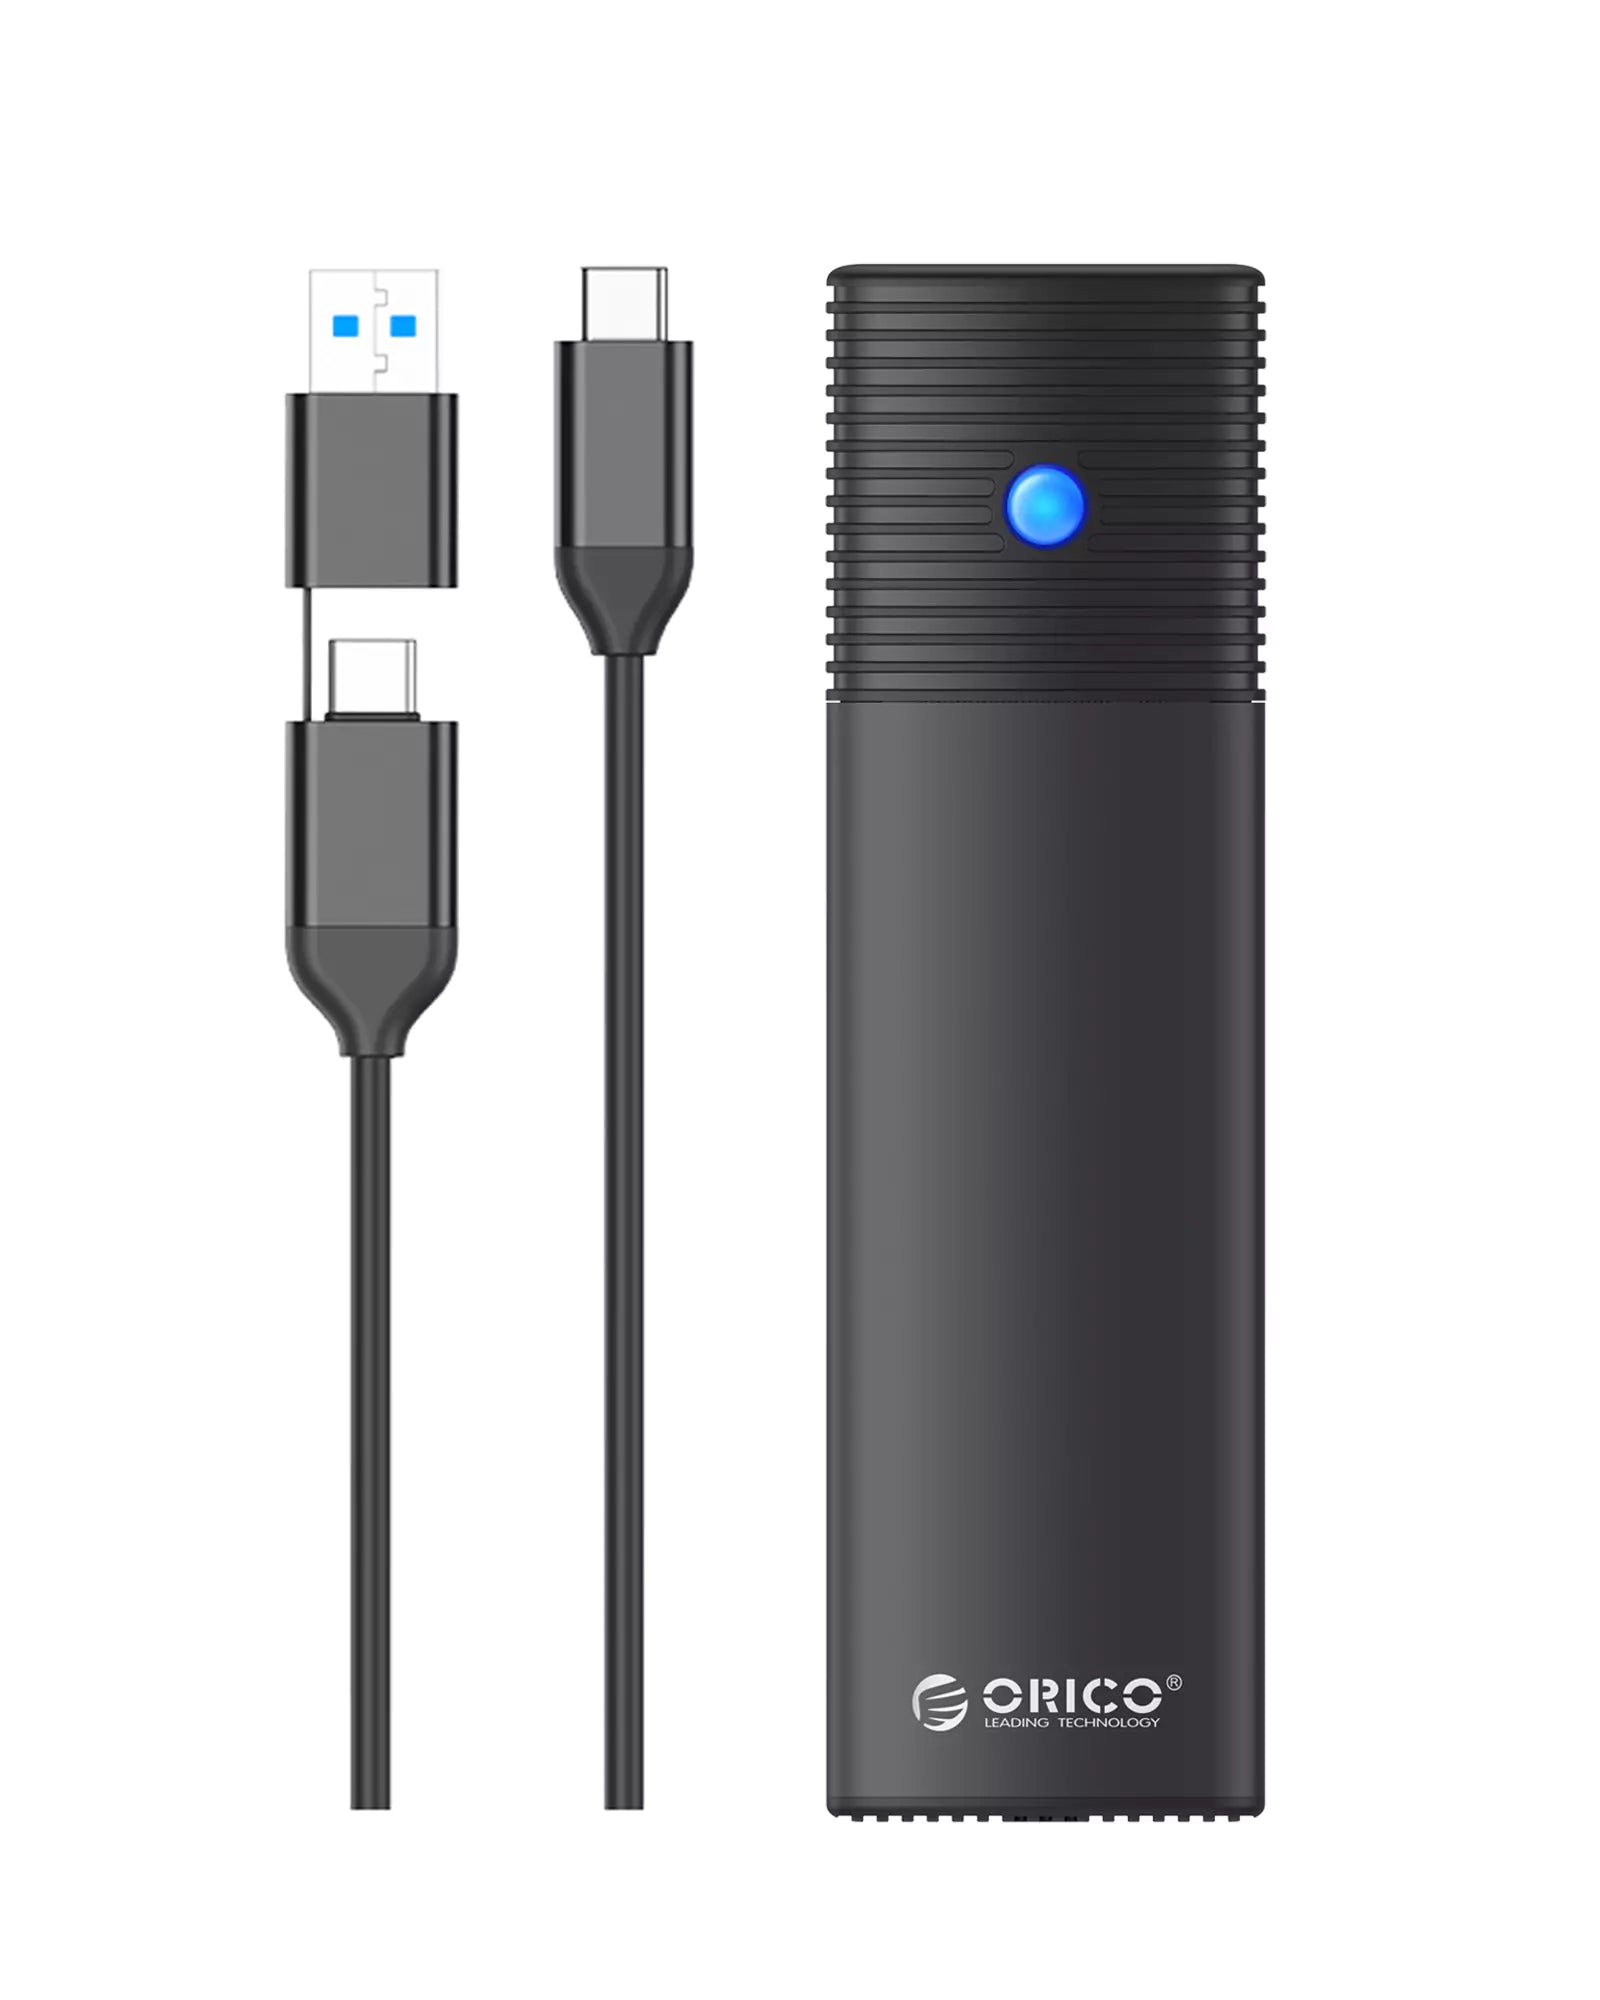 ORICO 2-in-1 USB-C to USB-C/USB-A M.2 NVME/SATA Dual Protocol SSD Enclosure